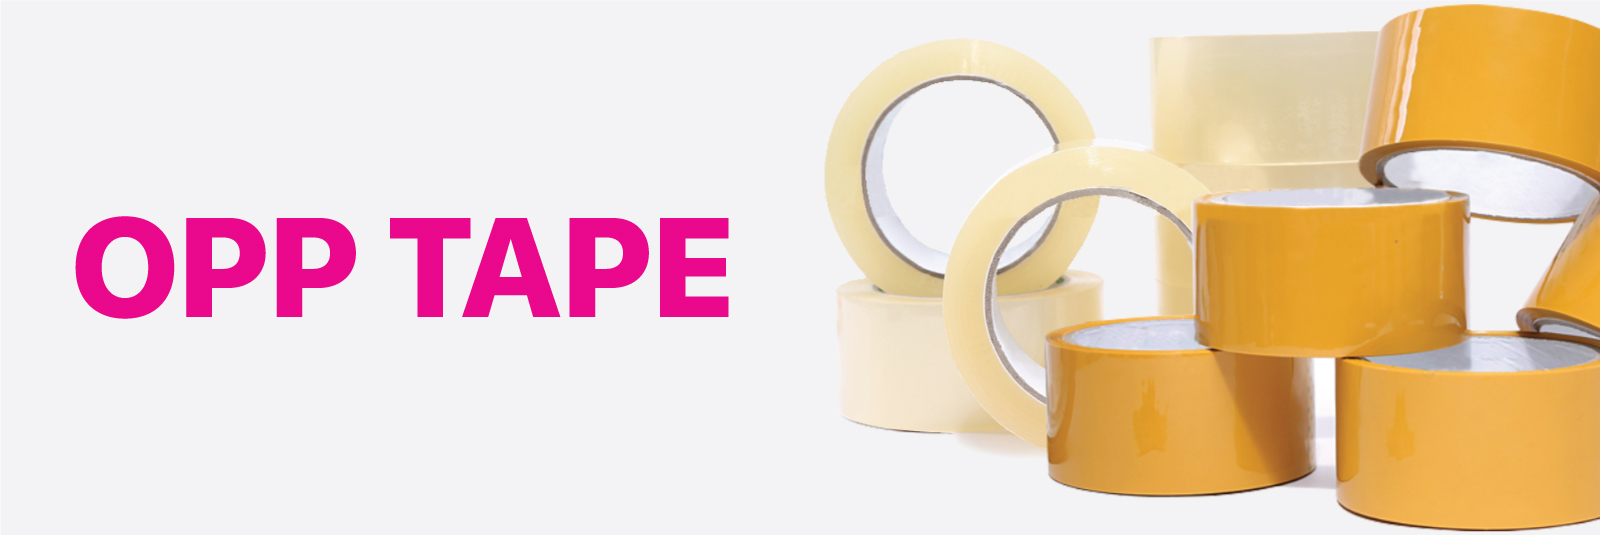 Opp tape